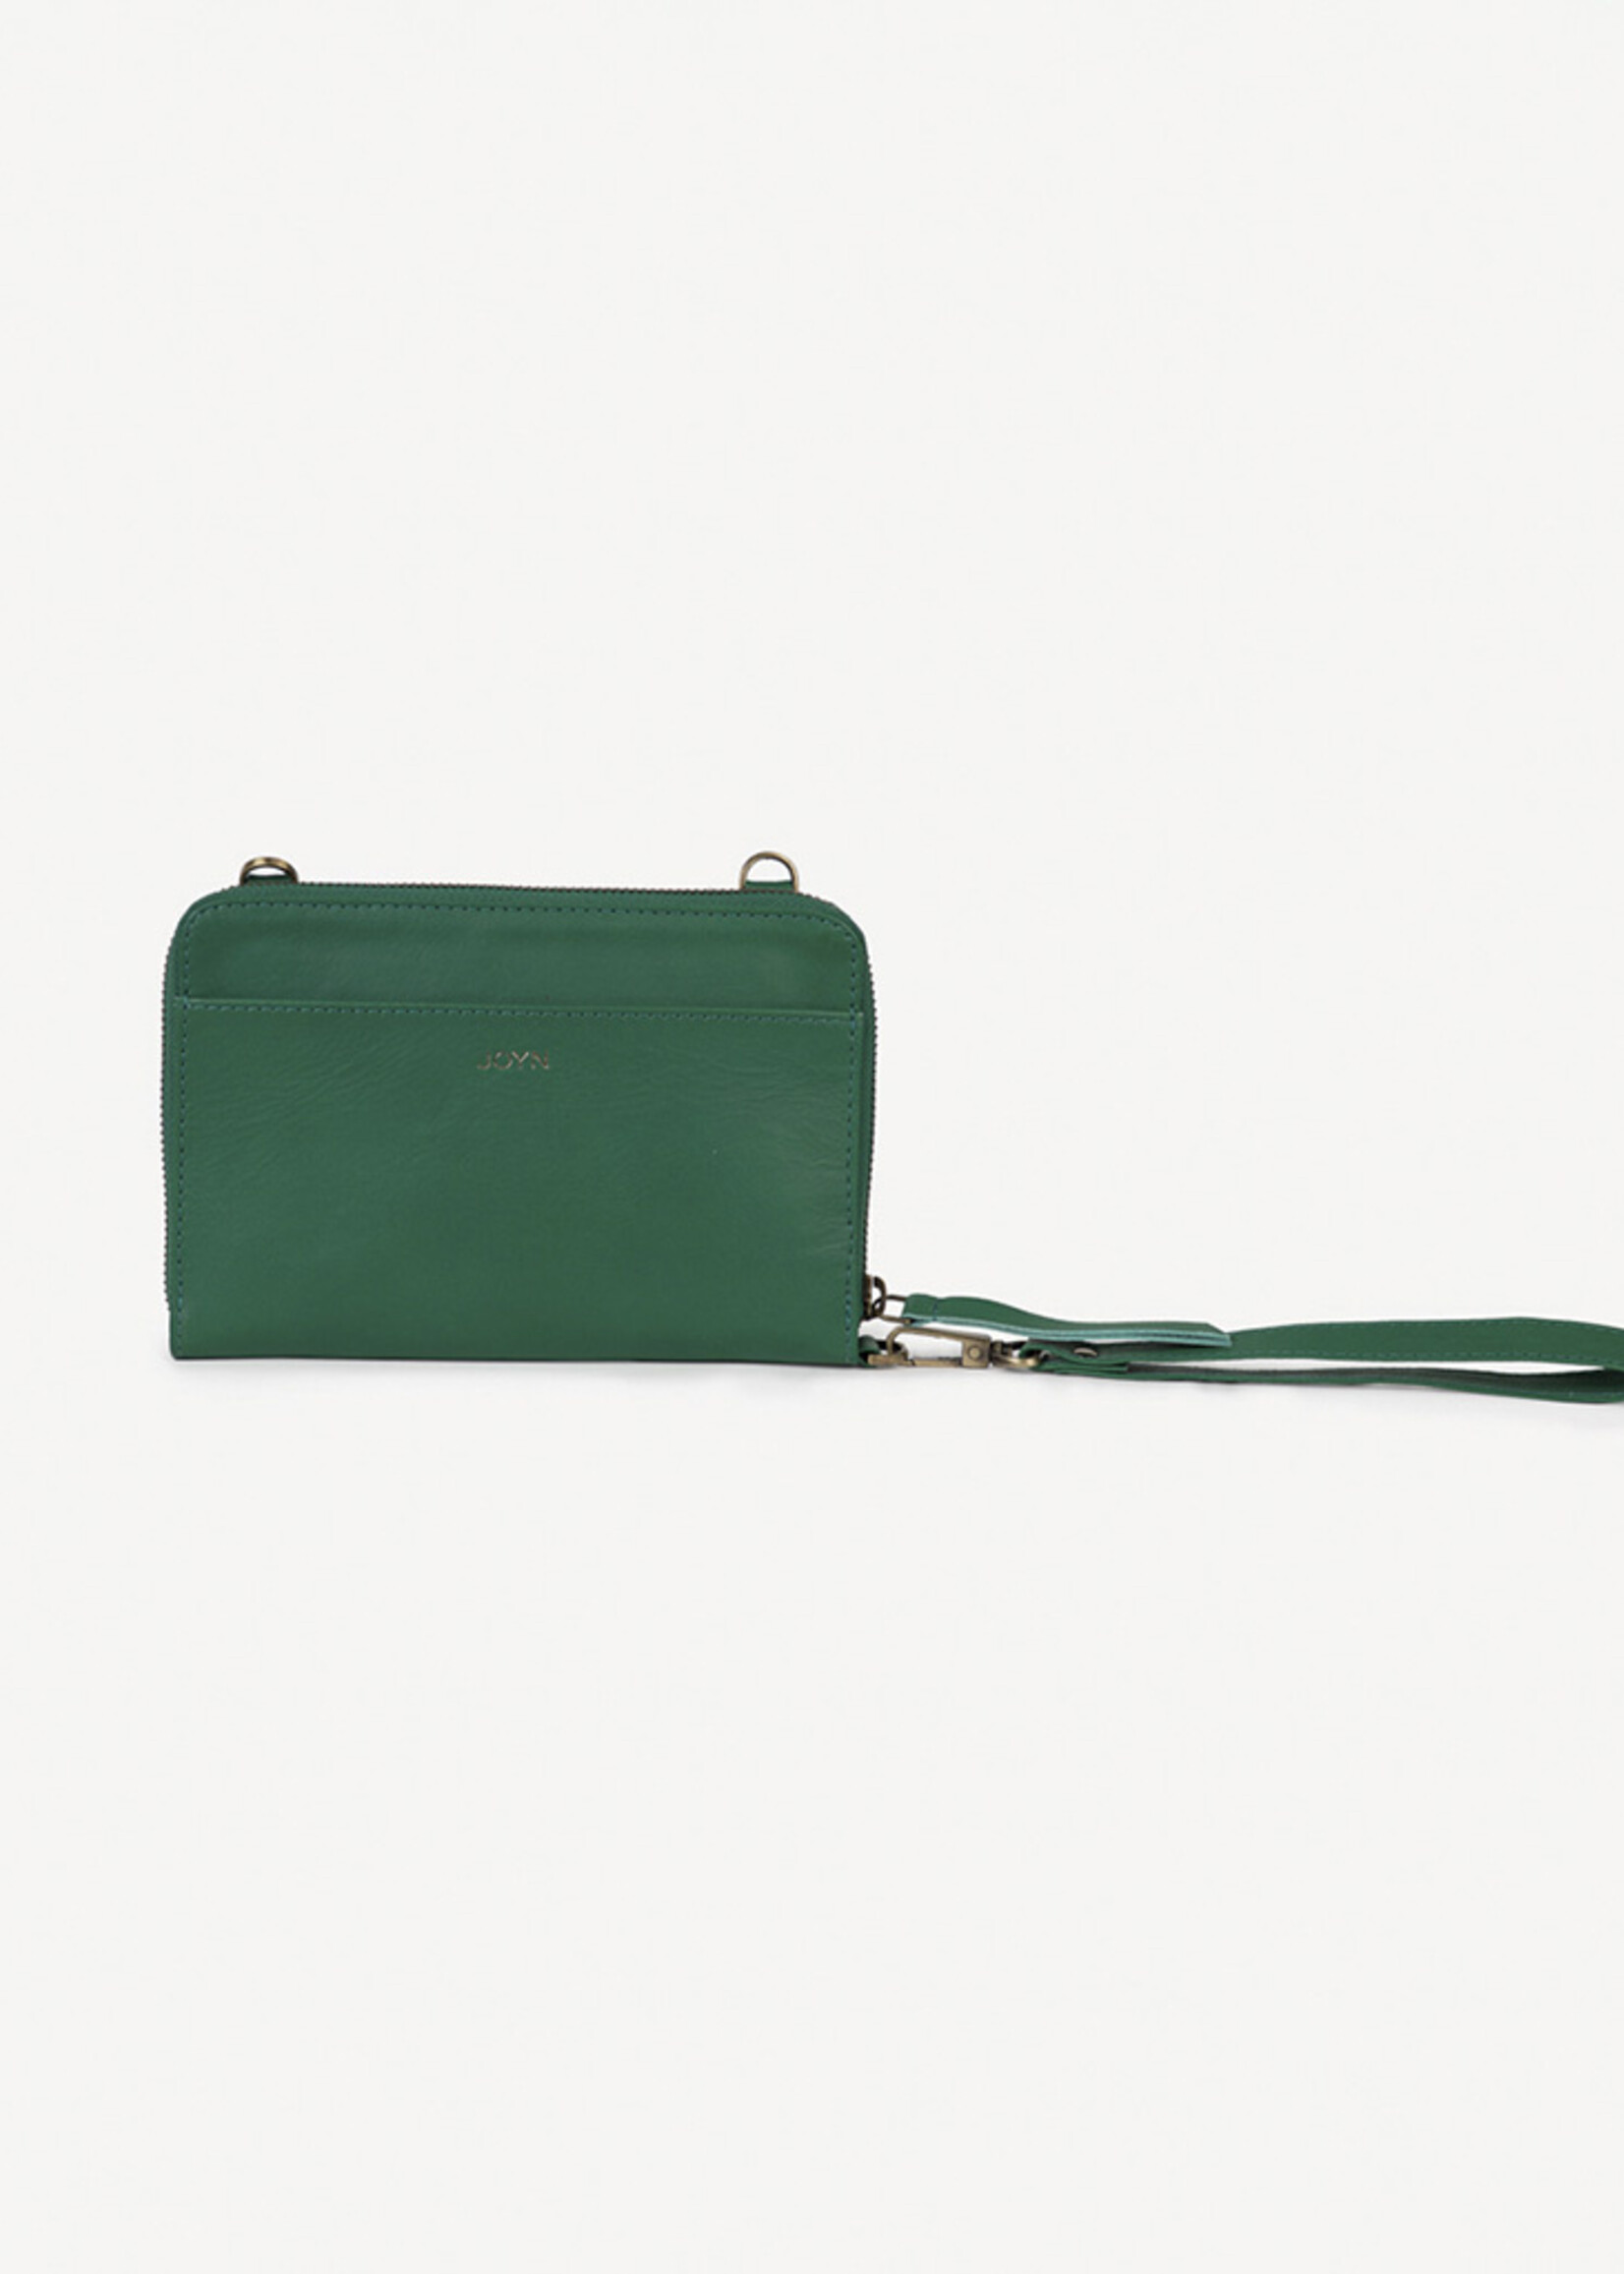 Joyn Kelly Green Leather Crossbody Wallet